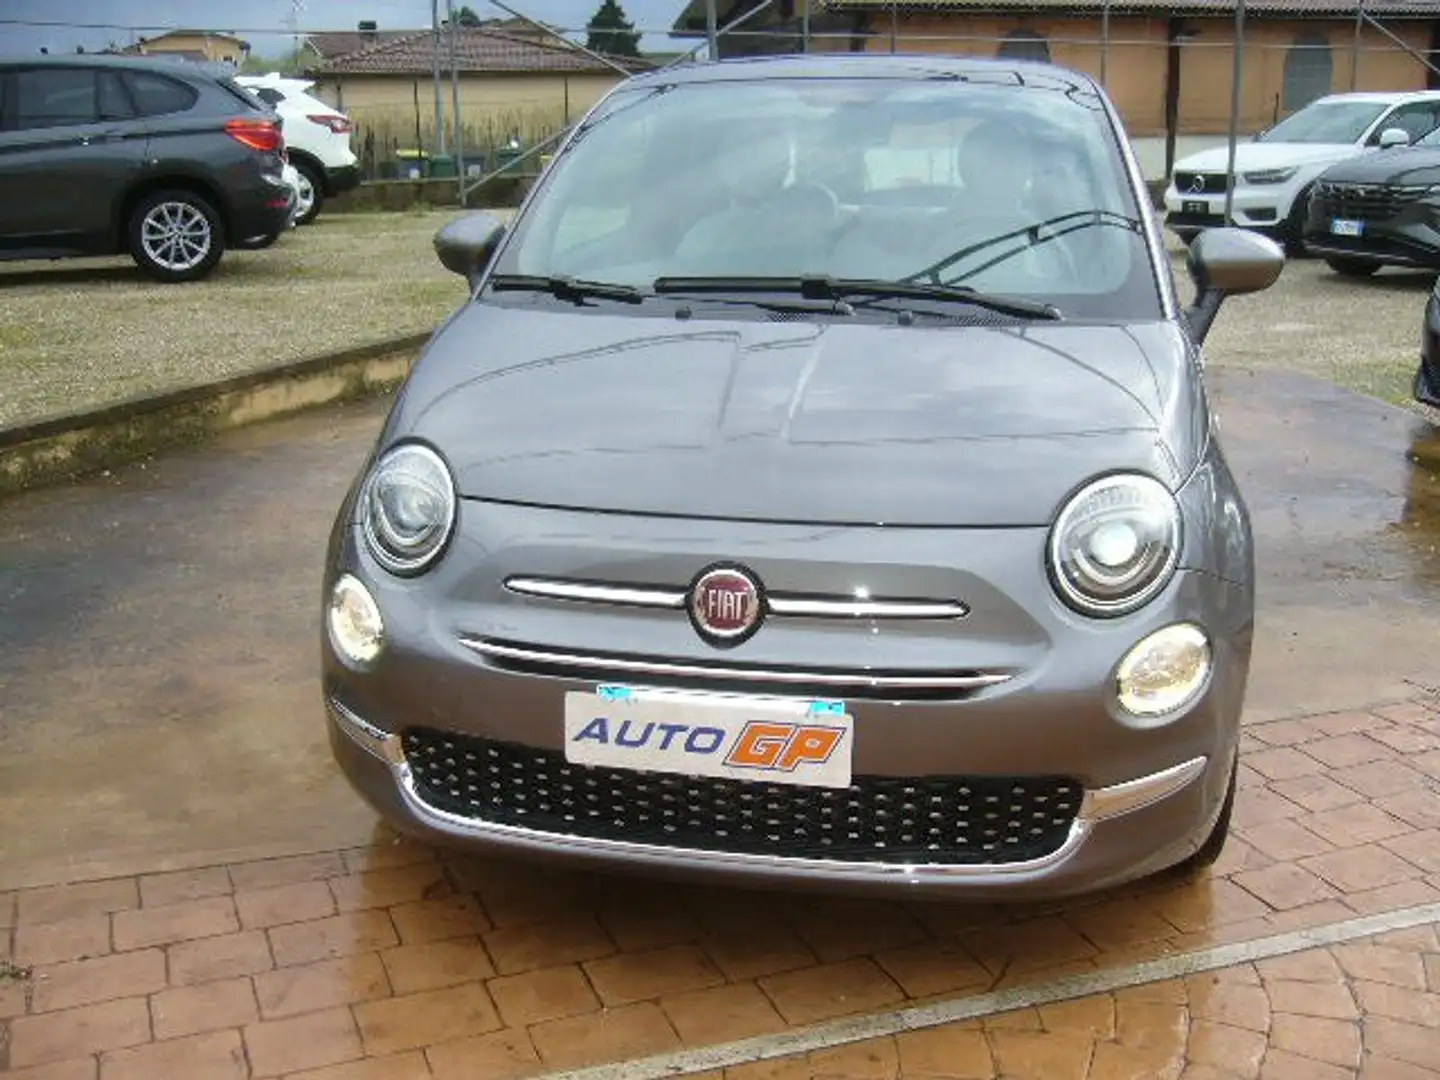 usato Fiat 500 City car a Zagarolo - Roma - Rm per € 14.500,-